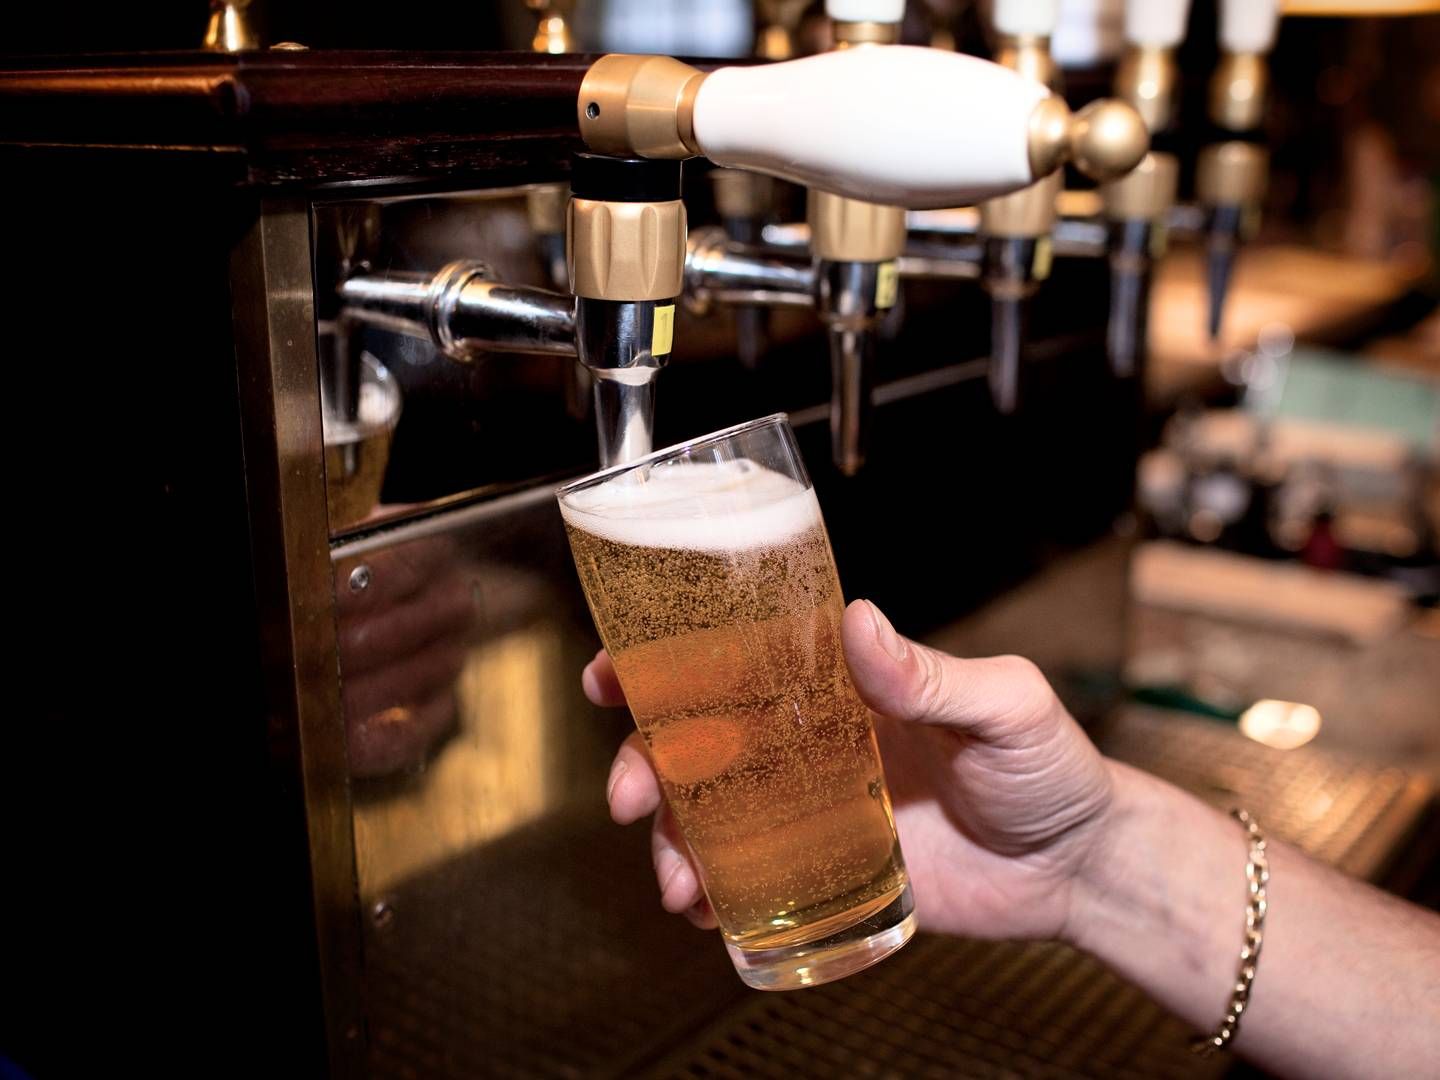 Hos de norske bryggerier Ringnes og Aass opleves der stigning af salget af alkoholfri øl. Begge peger på sundhedstendenser som årsager. | Foto: Jakob Jørgensen